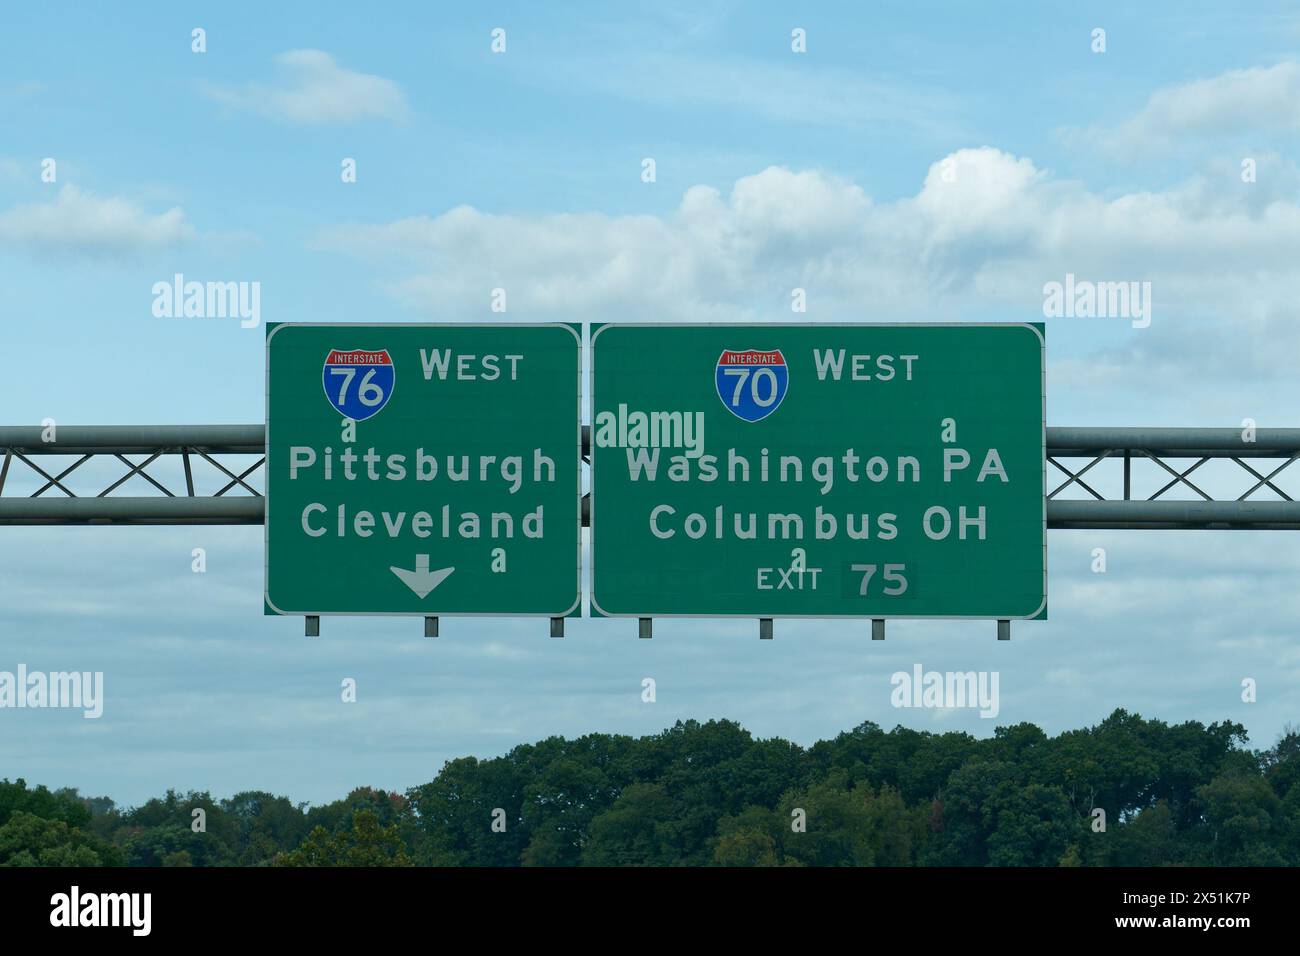 Prenez la sortie 75 pour l'I-70 West vers Washington PA et Columbus OH, et l'I-76 West vers Pittsburgh, Pennsylvanie et Cleveland, Ohio Banque D'Images